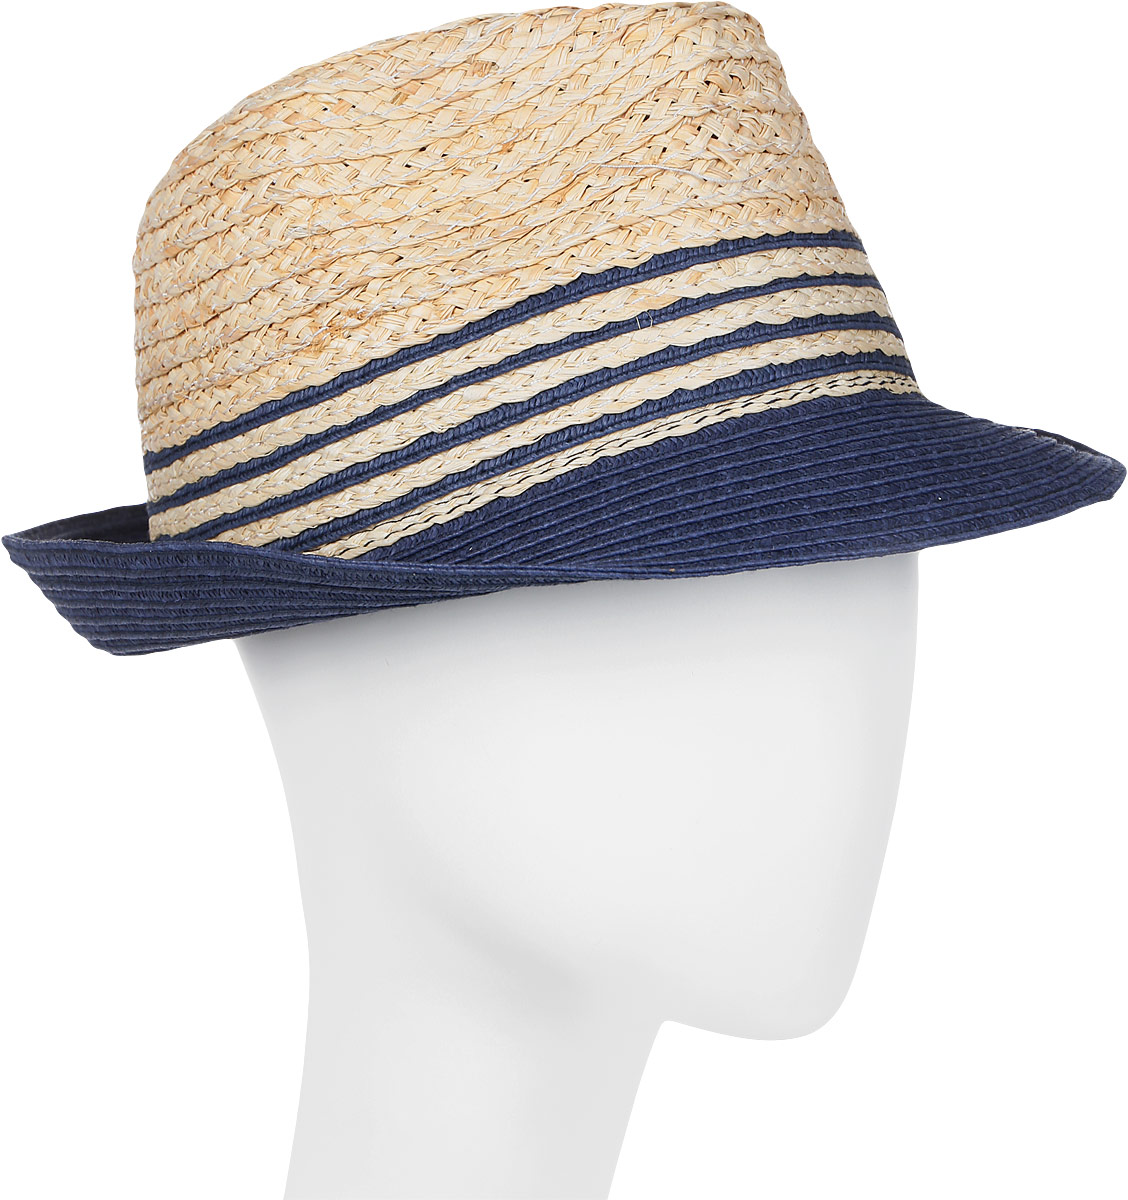 Шляпа женская Canoe Neel, цвет: синий. 1963544. Размер 56/59